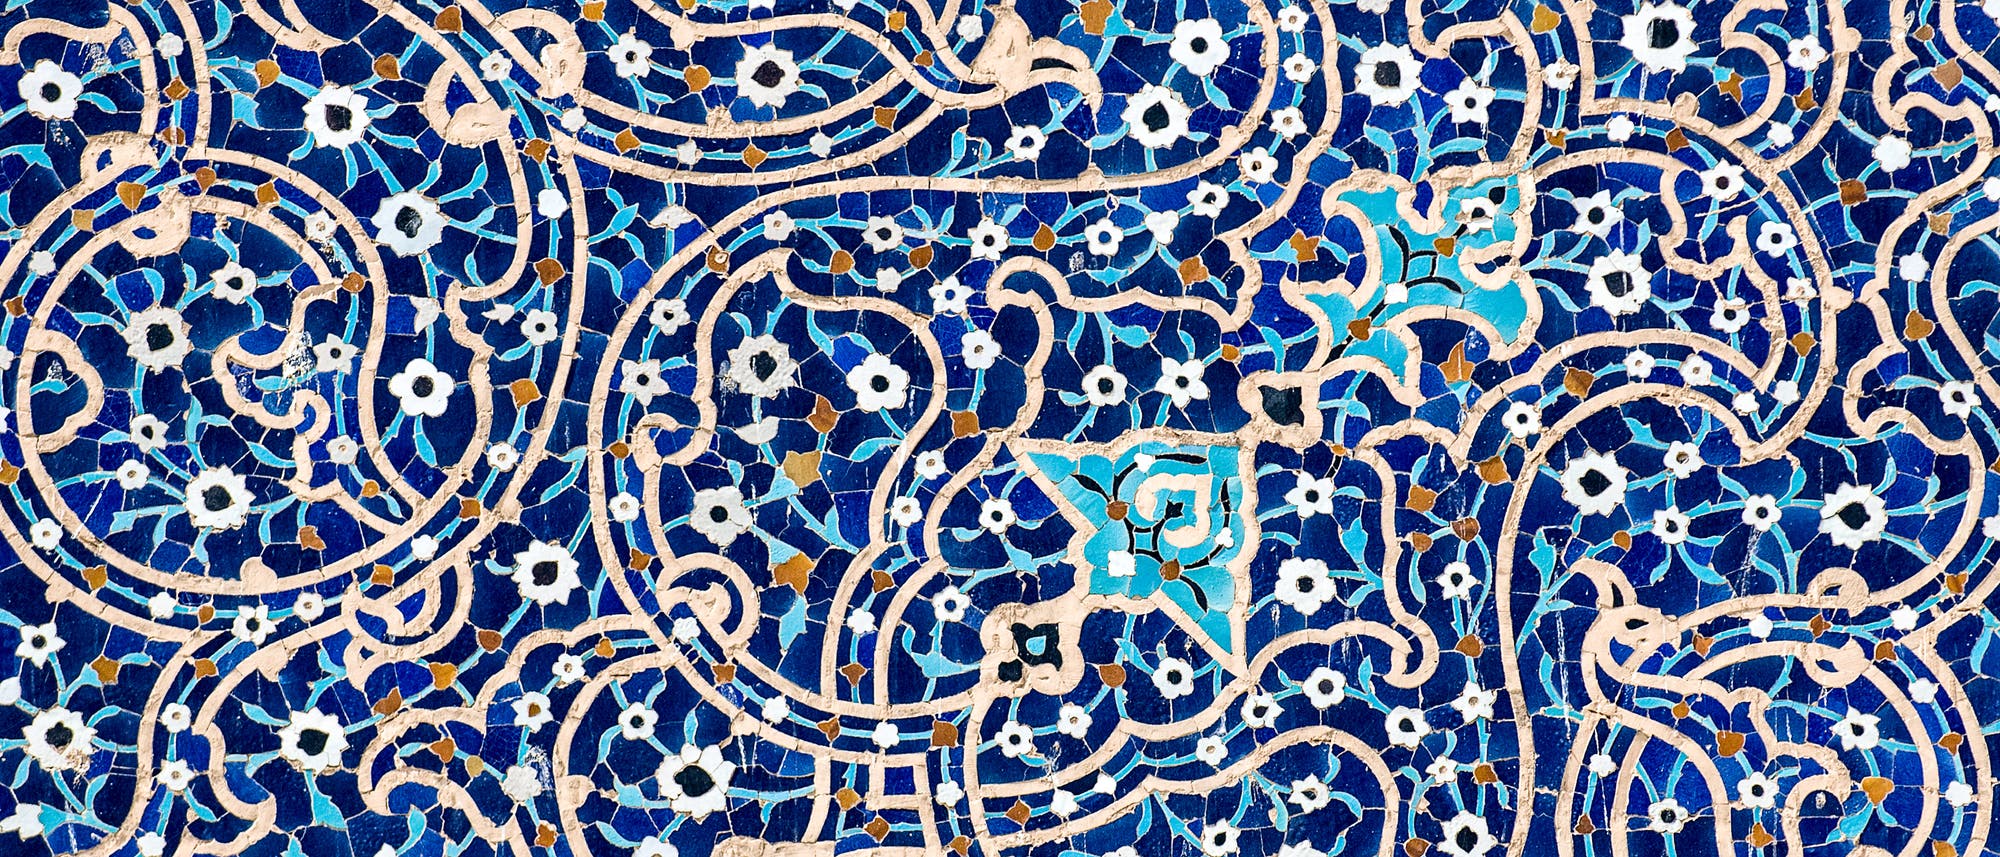 Fliesen in der Isfahan-Moschee 